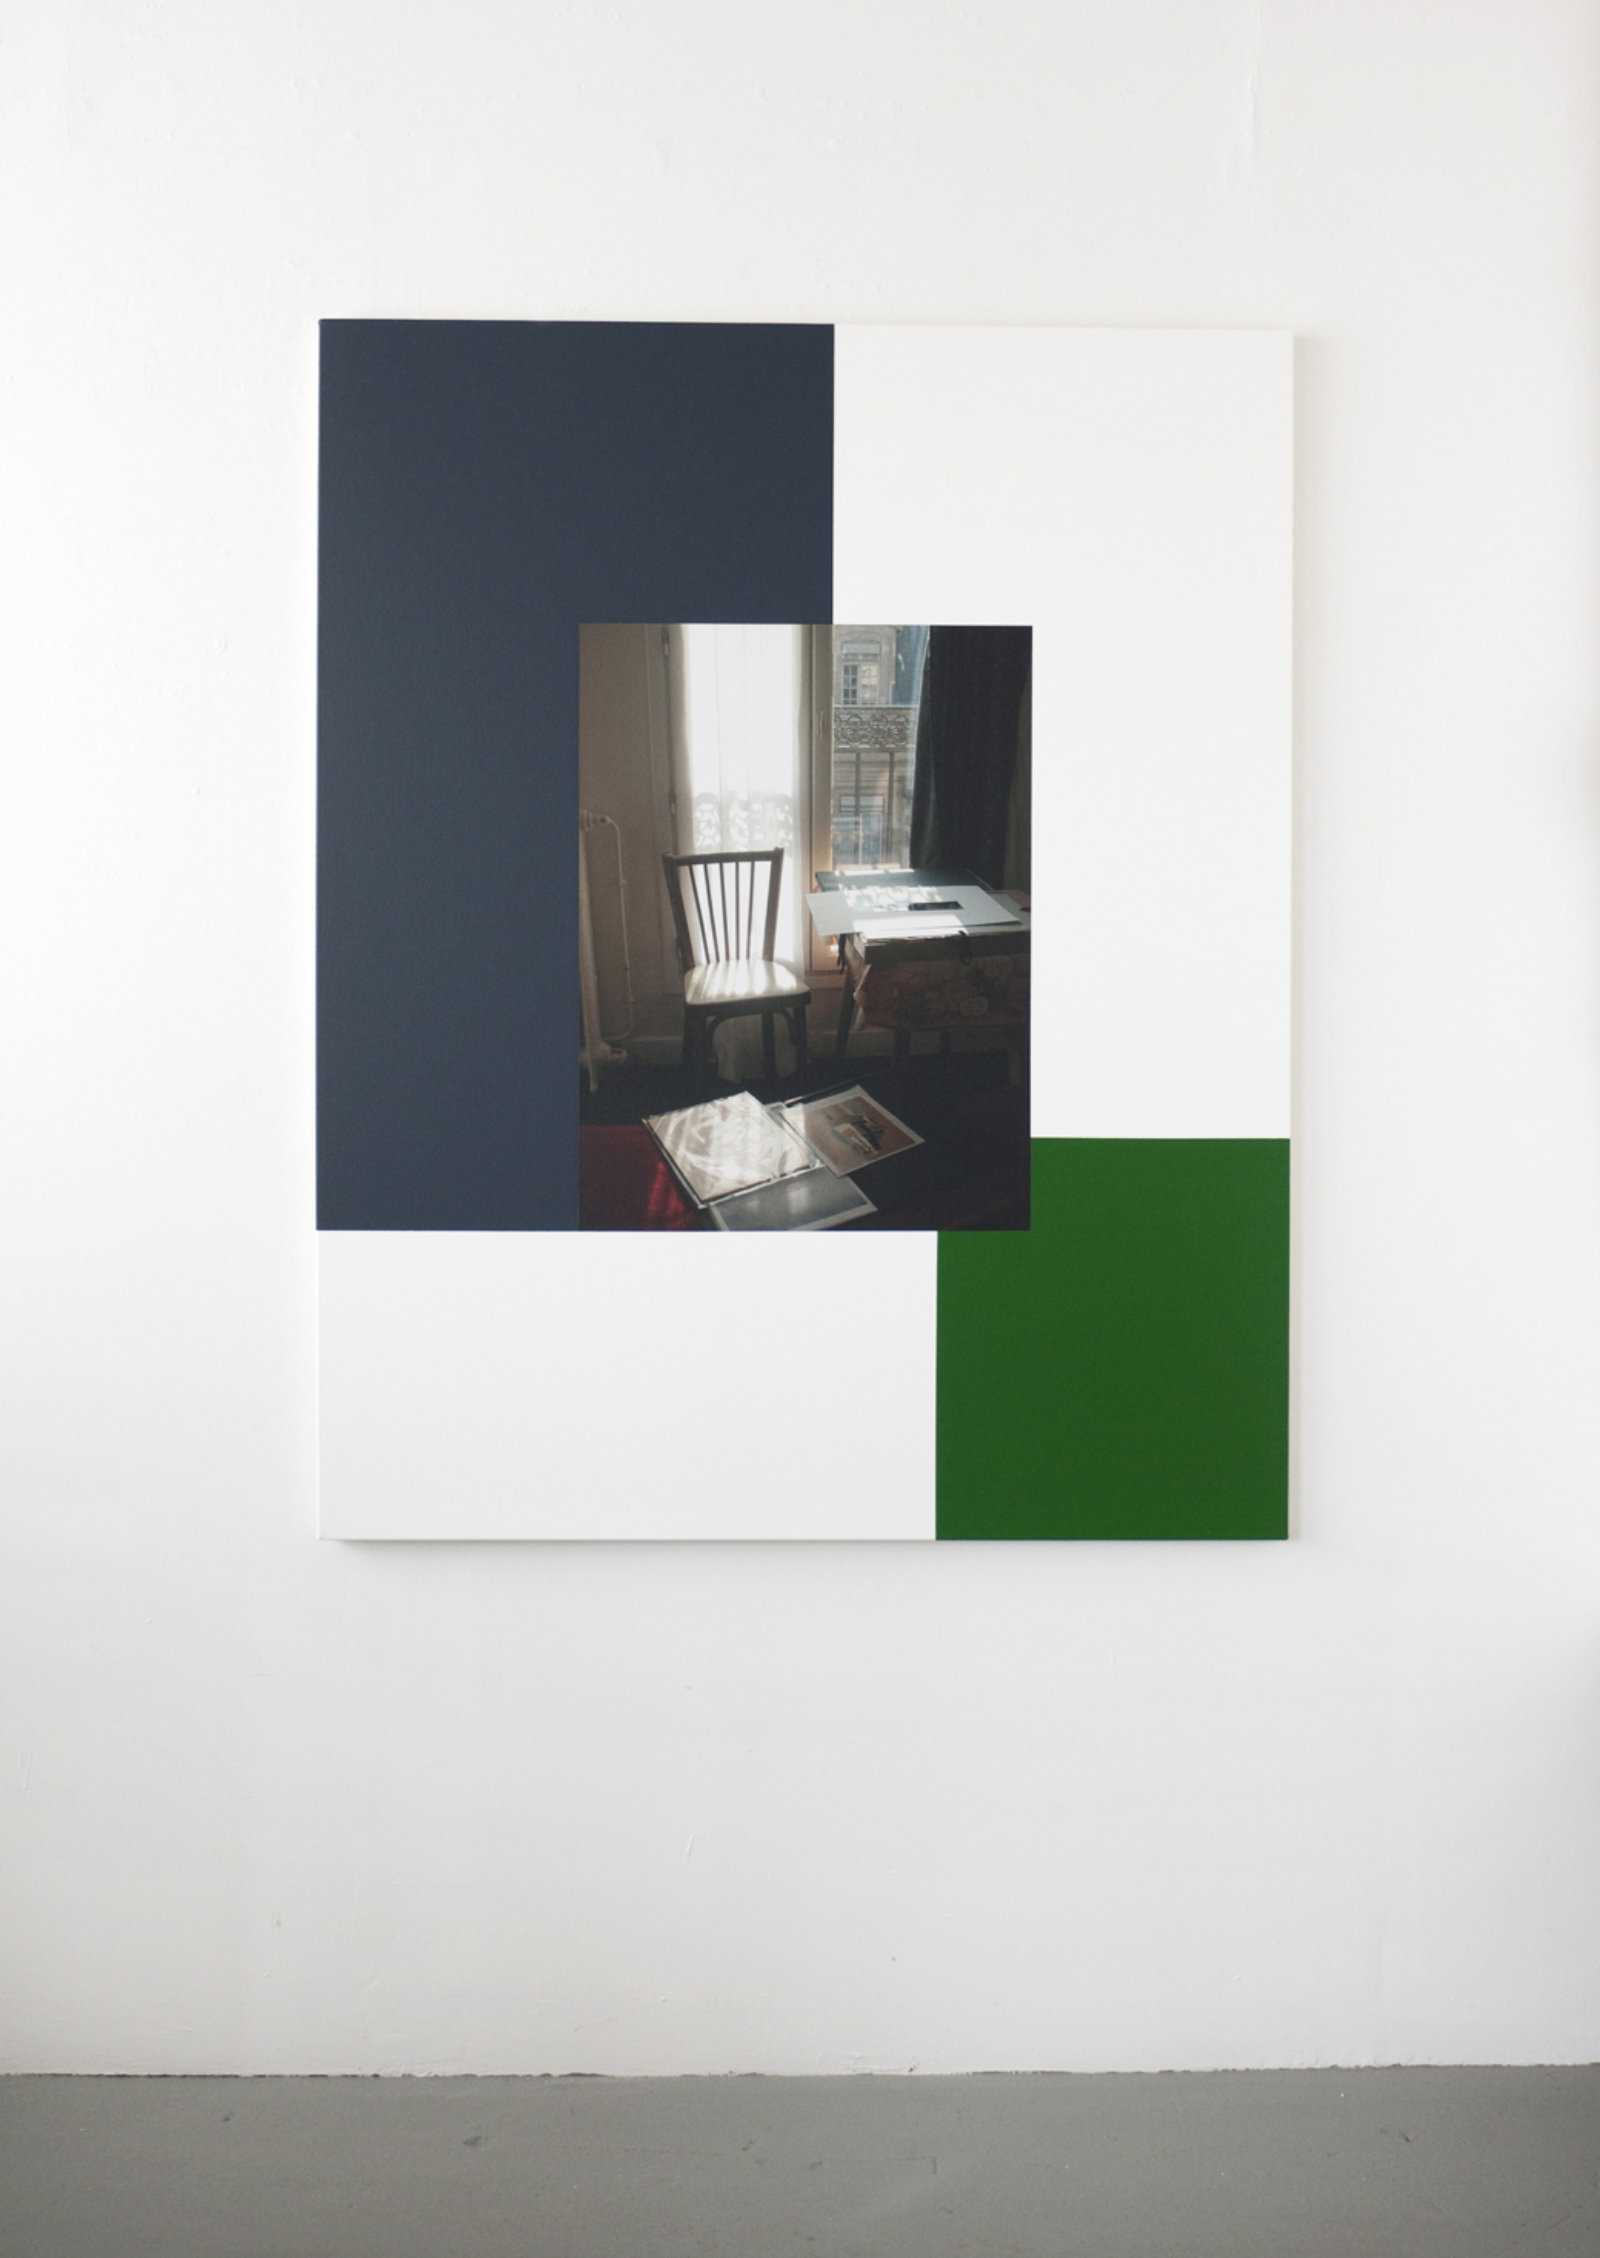 Ian Wallace, Hotel Rivoli (22 November 2003) II, 2012, photolaminate and acrylic on canvas, 60 x 48 in. (153 x 122 cm)